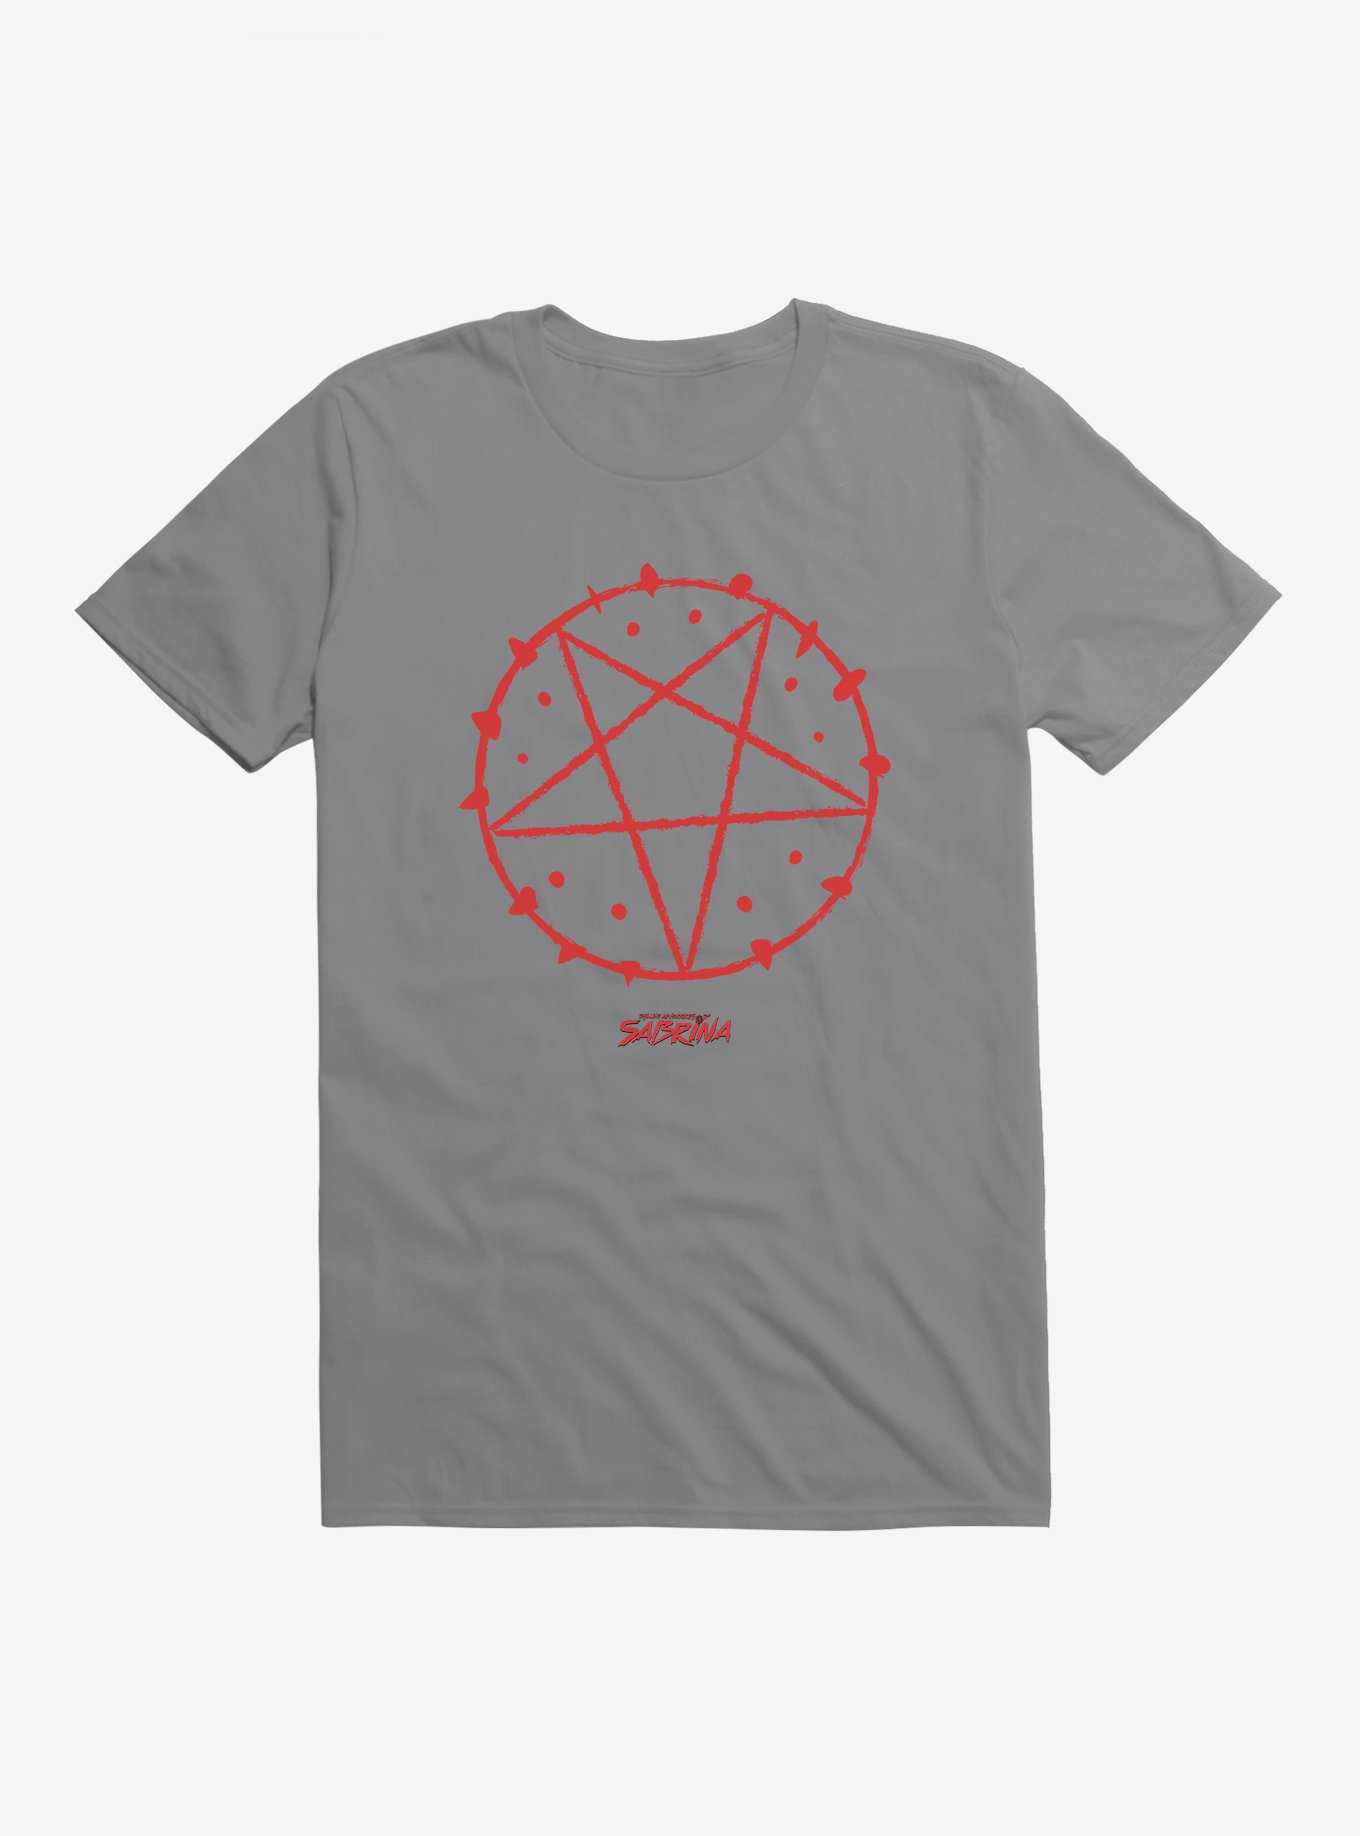 Chilling Adventures Of Sabrina Red Pentagram T-Shirt, , hi-res